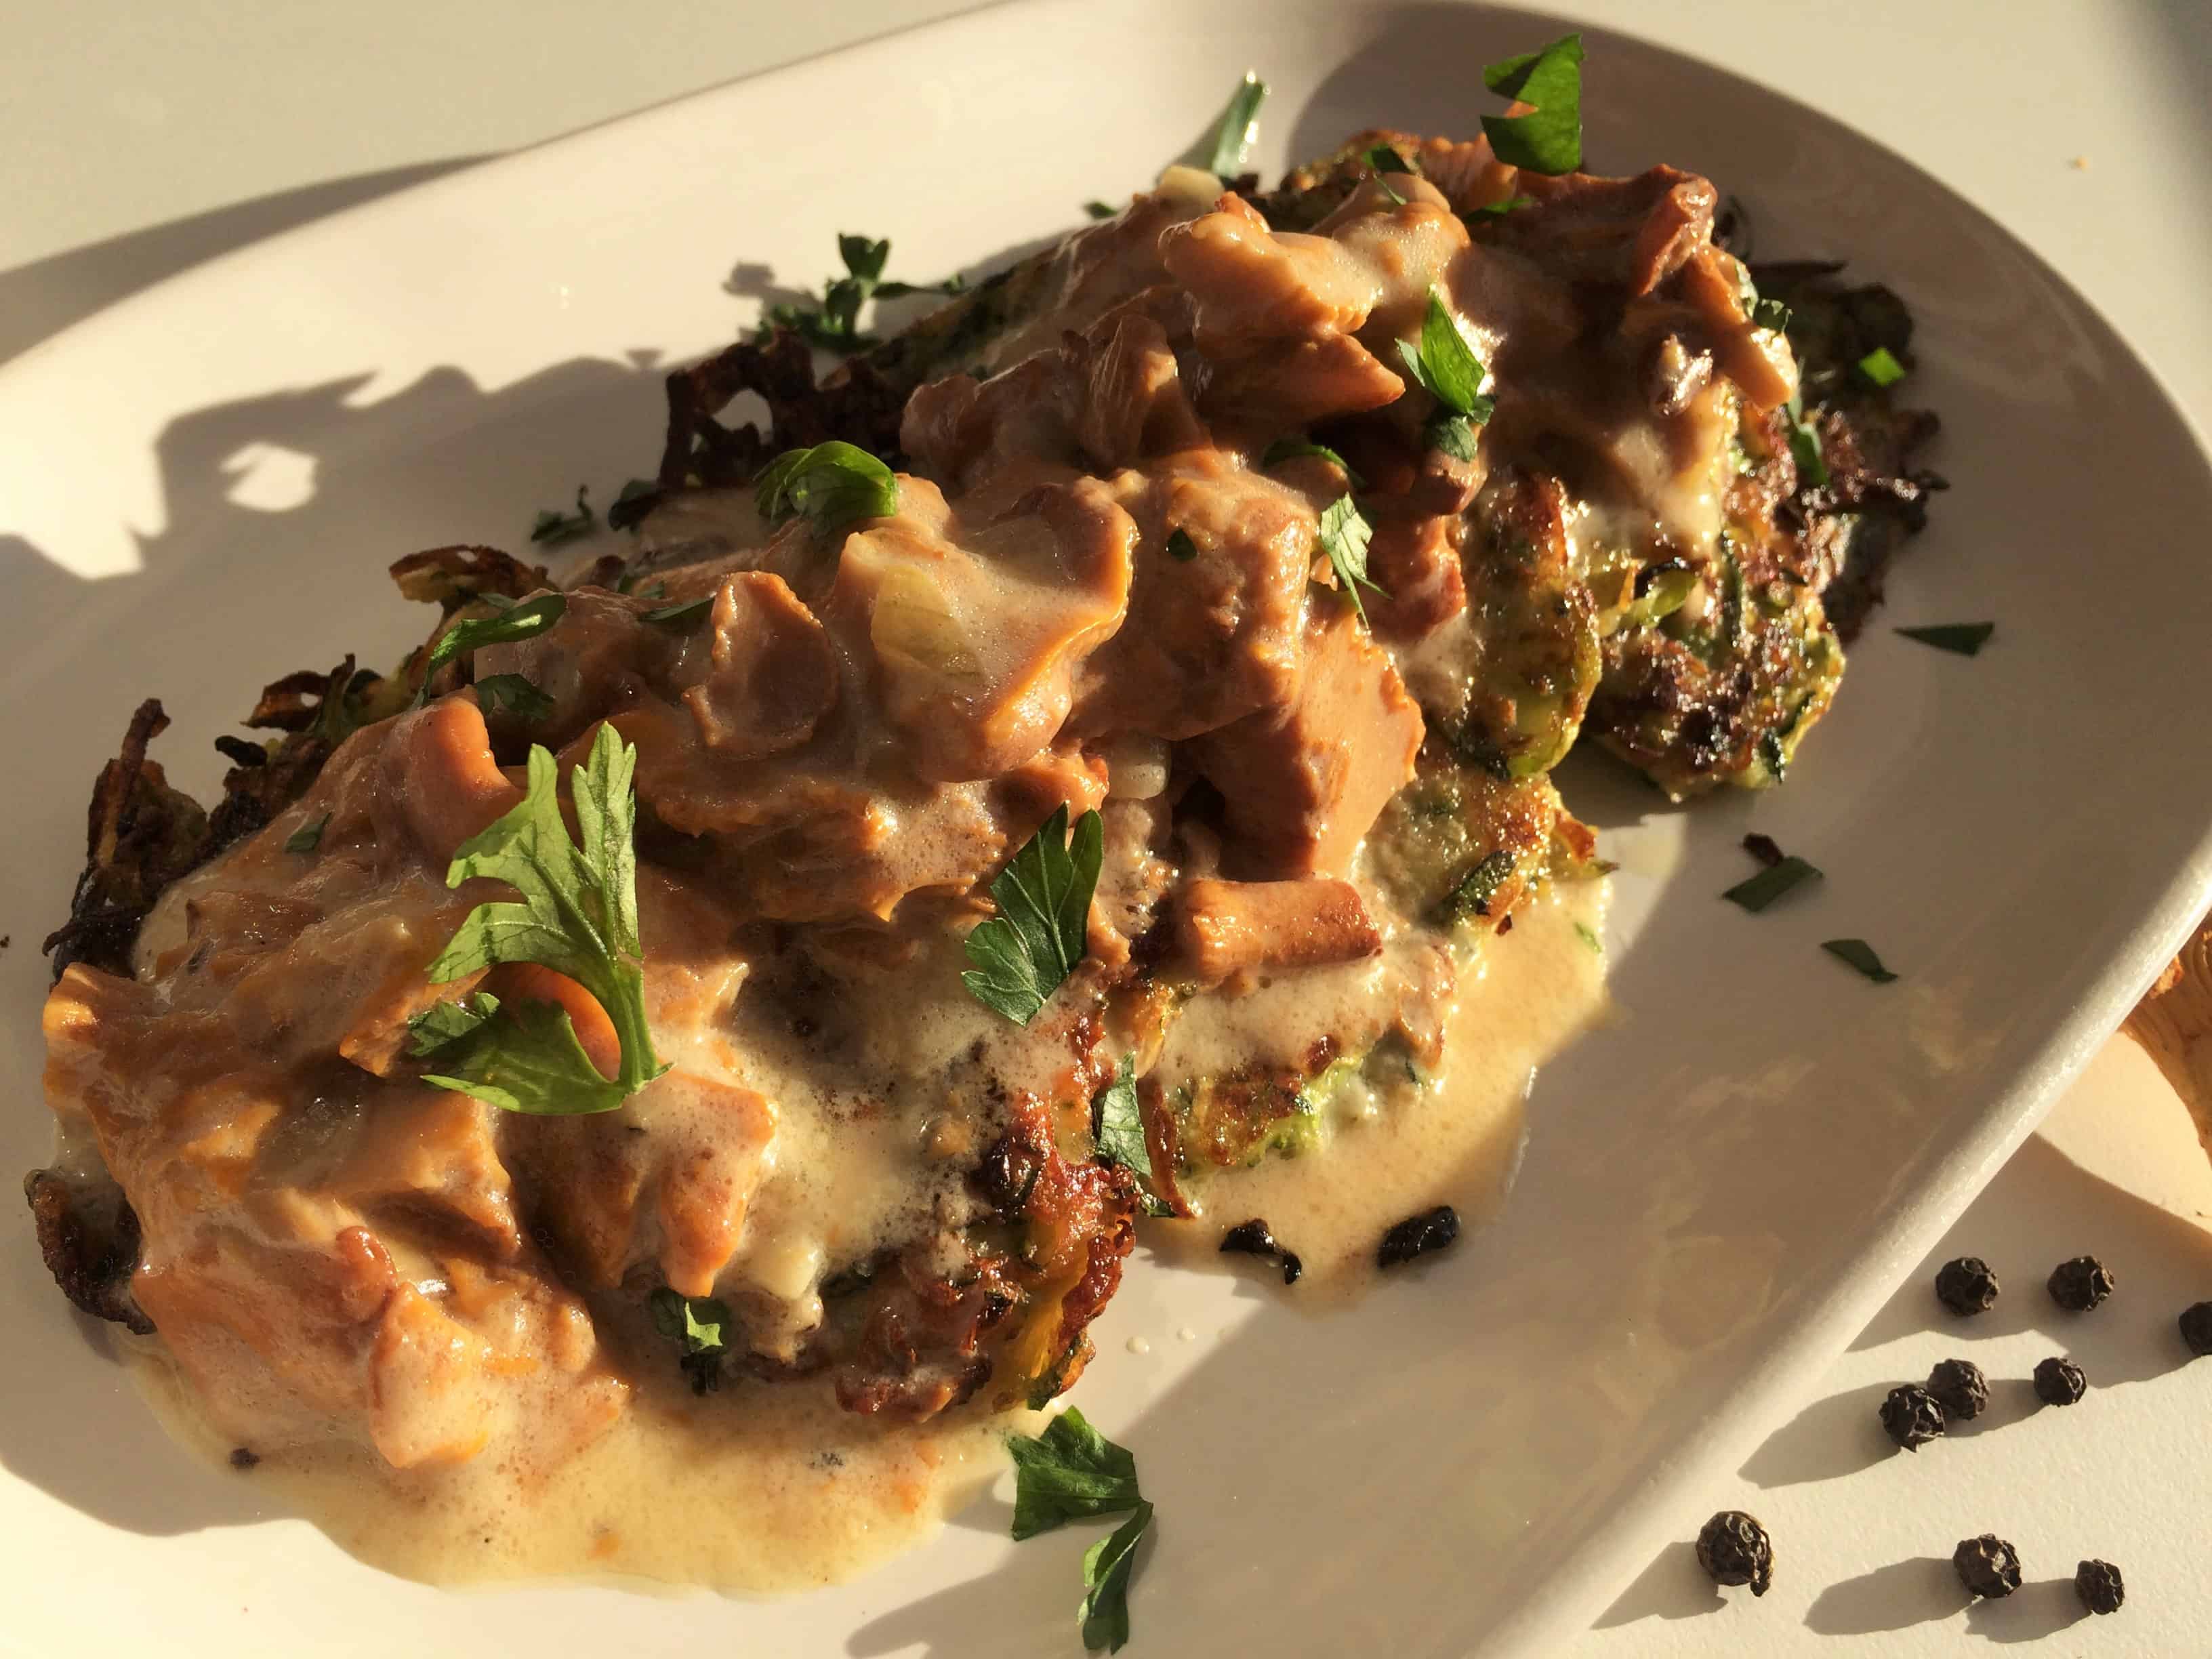 Placki z cukinii z sosem kurkowym | Zucchini hash browns with chanterelles sauce